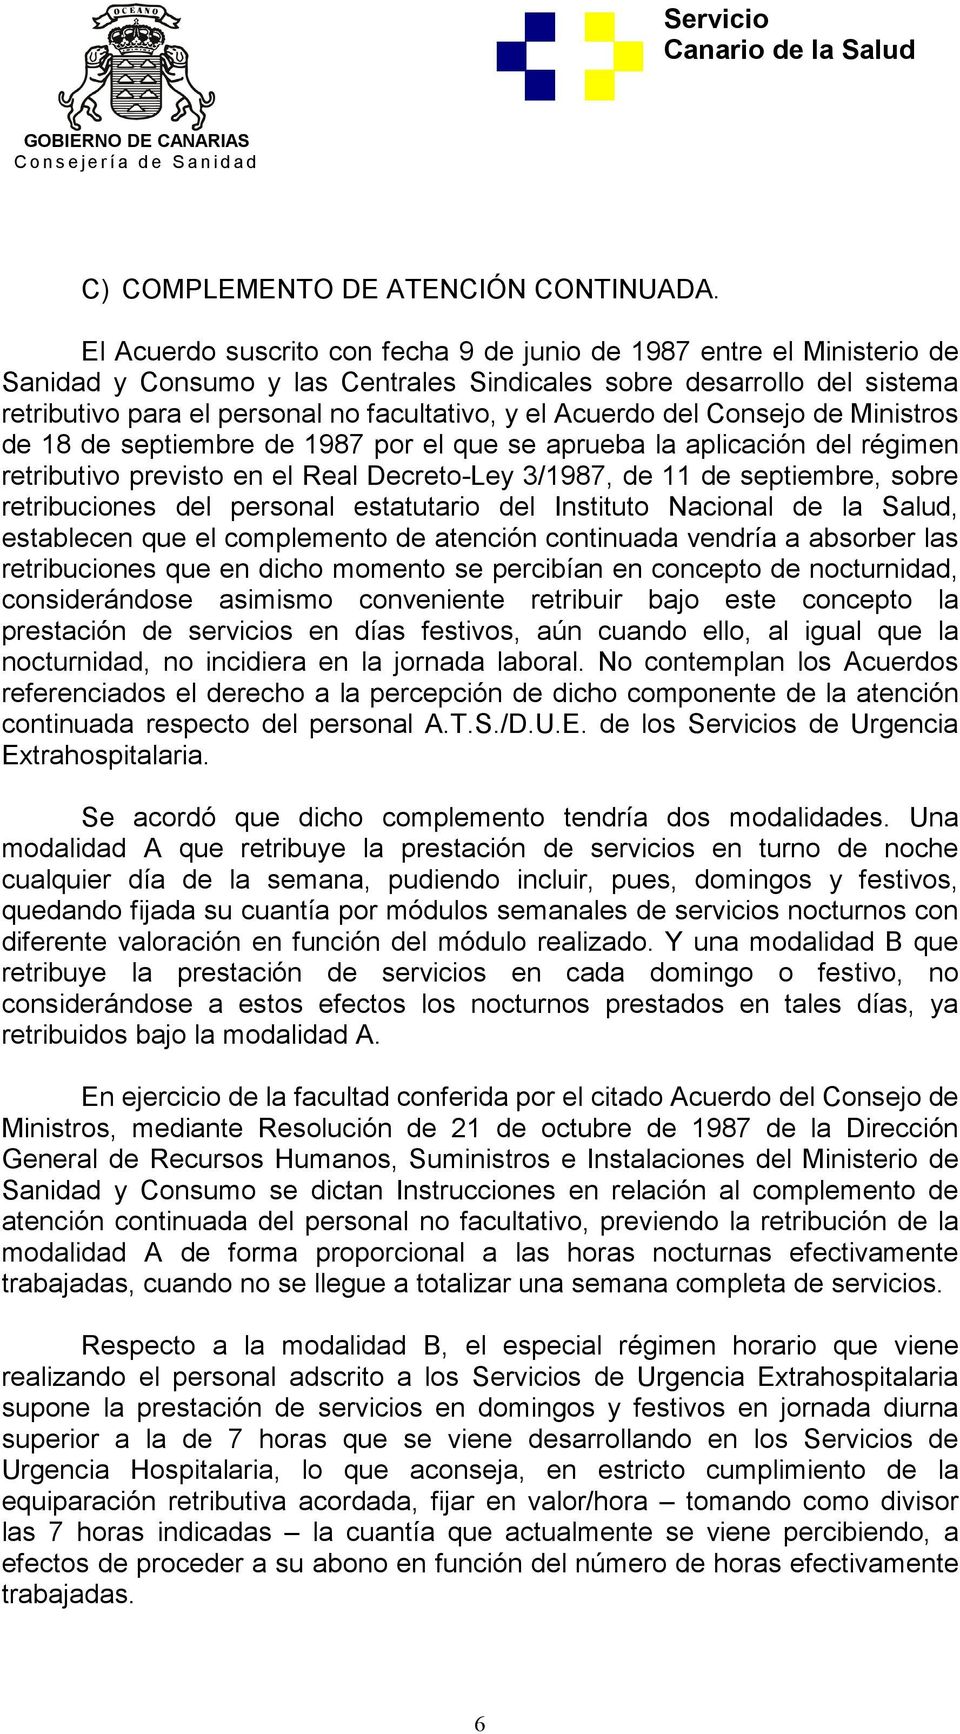 Acuerdo del Consejo de Ministros de 18 de septiembre de 1987 por el que se aprueba la aplicación del régimen retributivo previsto en el Real Decreto-Ley 3/1987, de 11 de septiembre, sobre